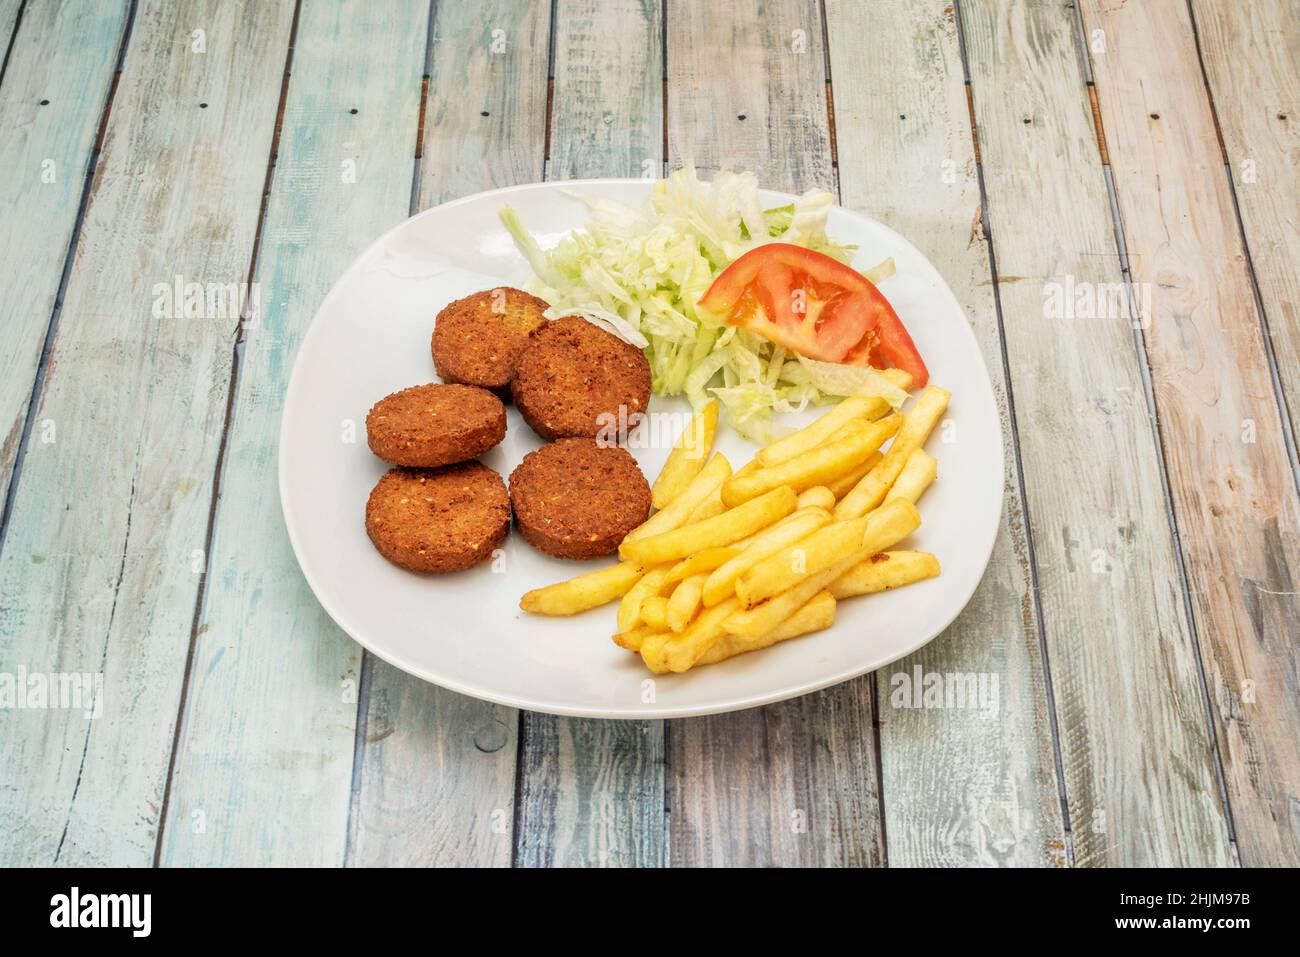 Falafel ist das Hauptgericht der arabischen Küche, das neue „muss“ der veganen Ernährung und das beliebteste Fast Food im gesamten Nahen Osten. Stockfoto